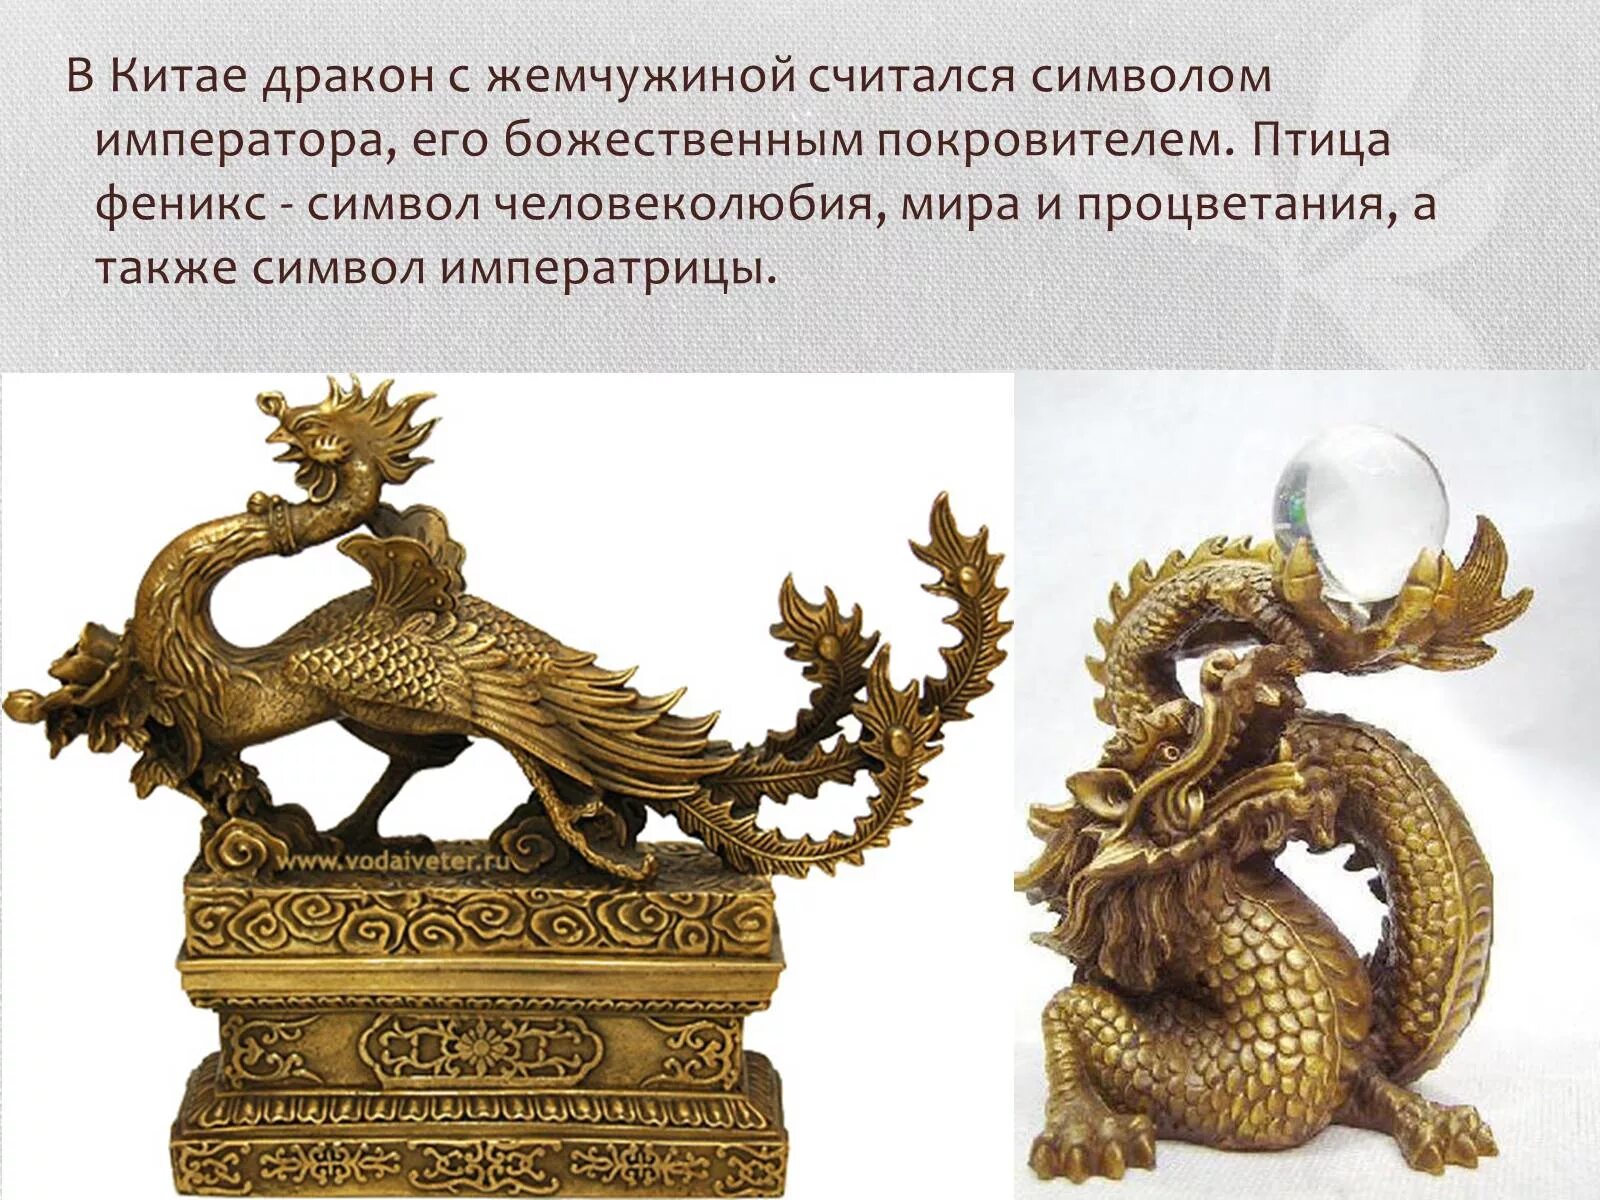 Дракон символ чего. Символ китайского императора. Китай дракон символ императора. Китай дракон символ власти. Символика древнего Китая.